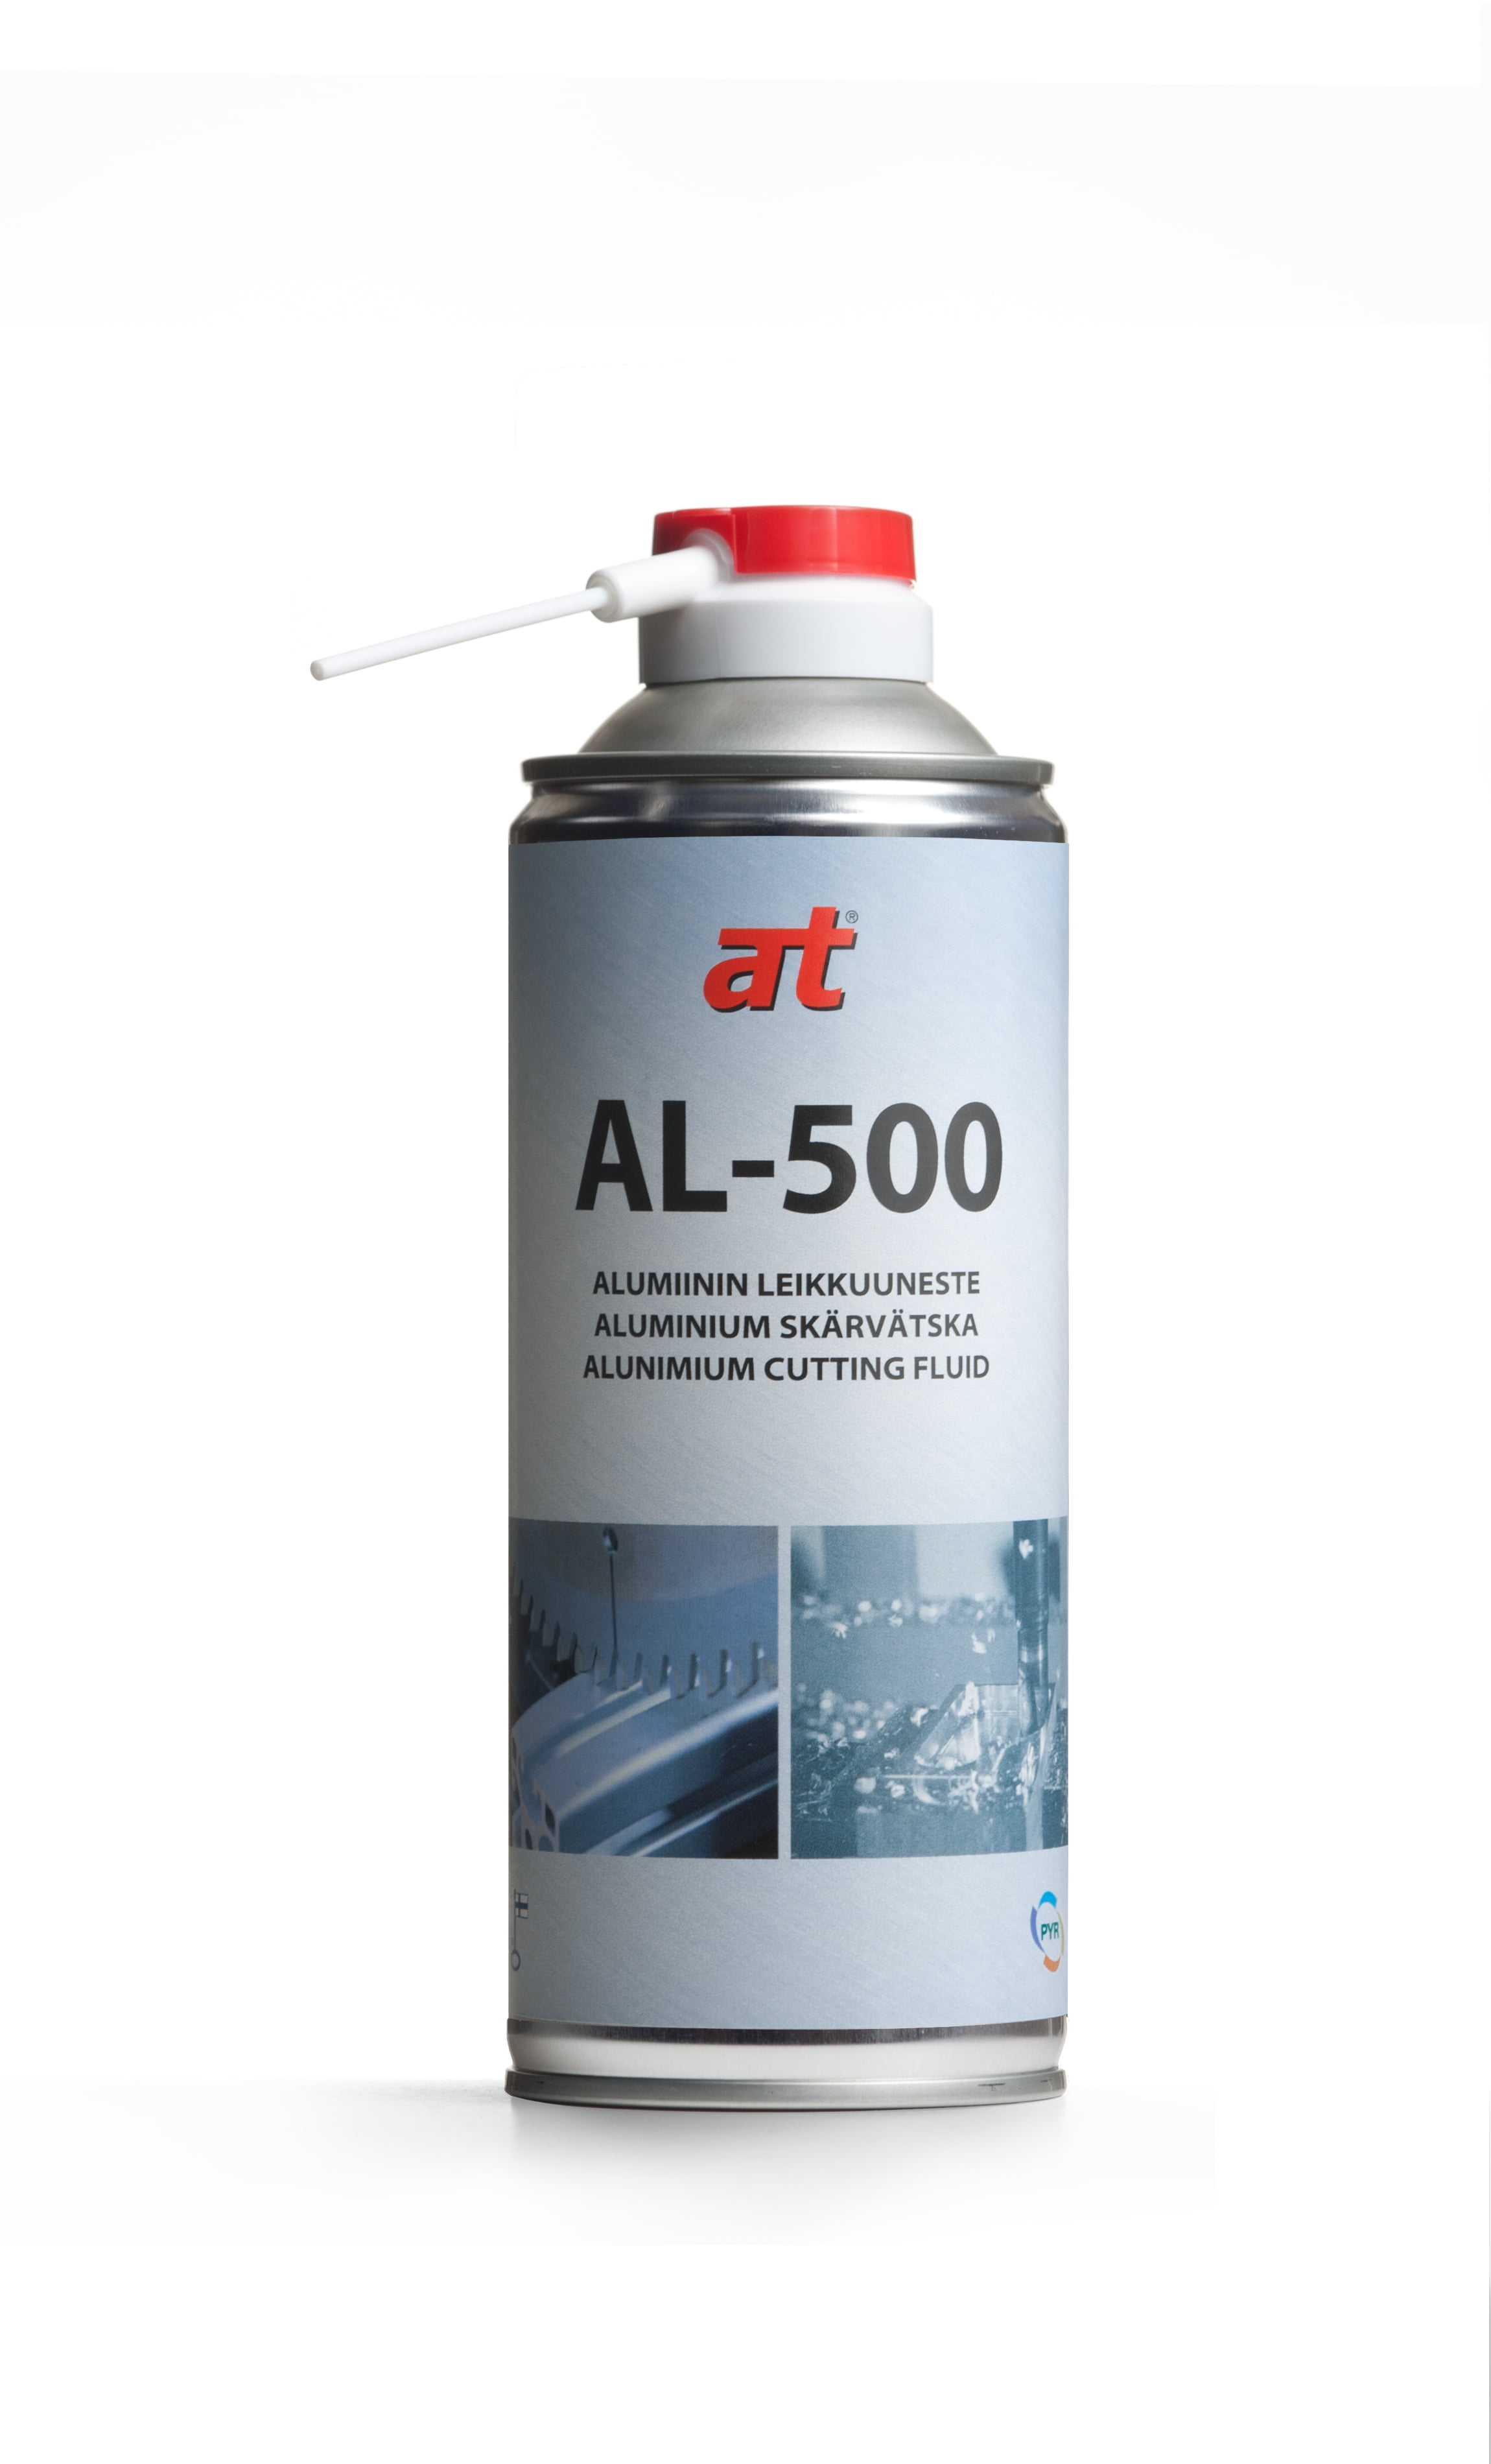 AL-500 Skärvätska för aluminium, 2349, 2351, 2350, 2353, 2354